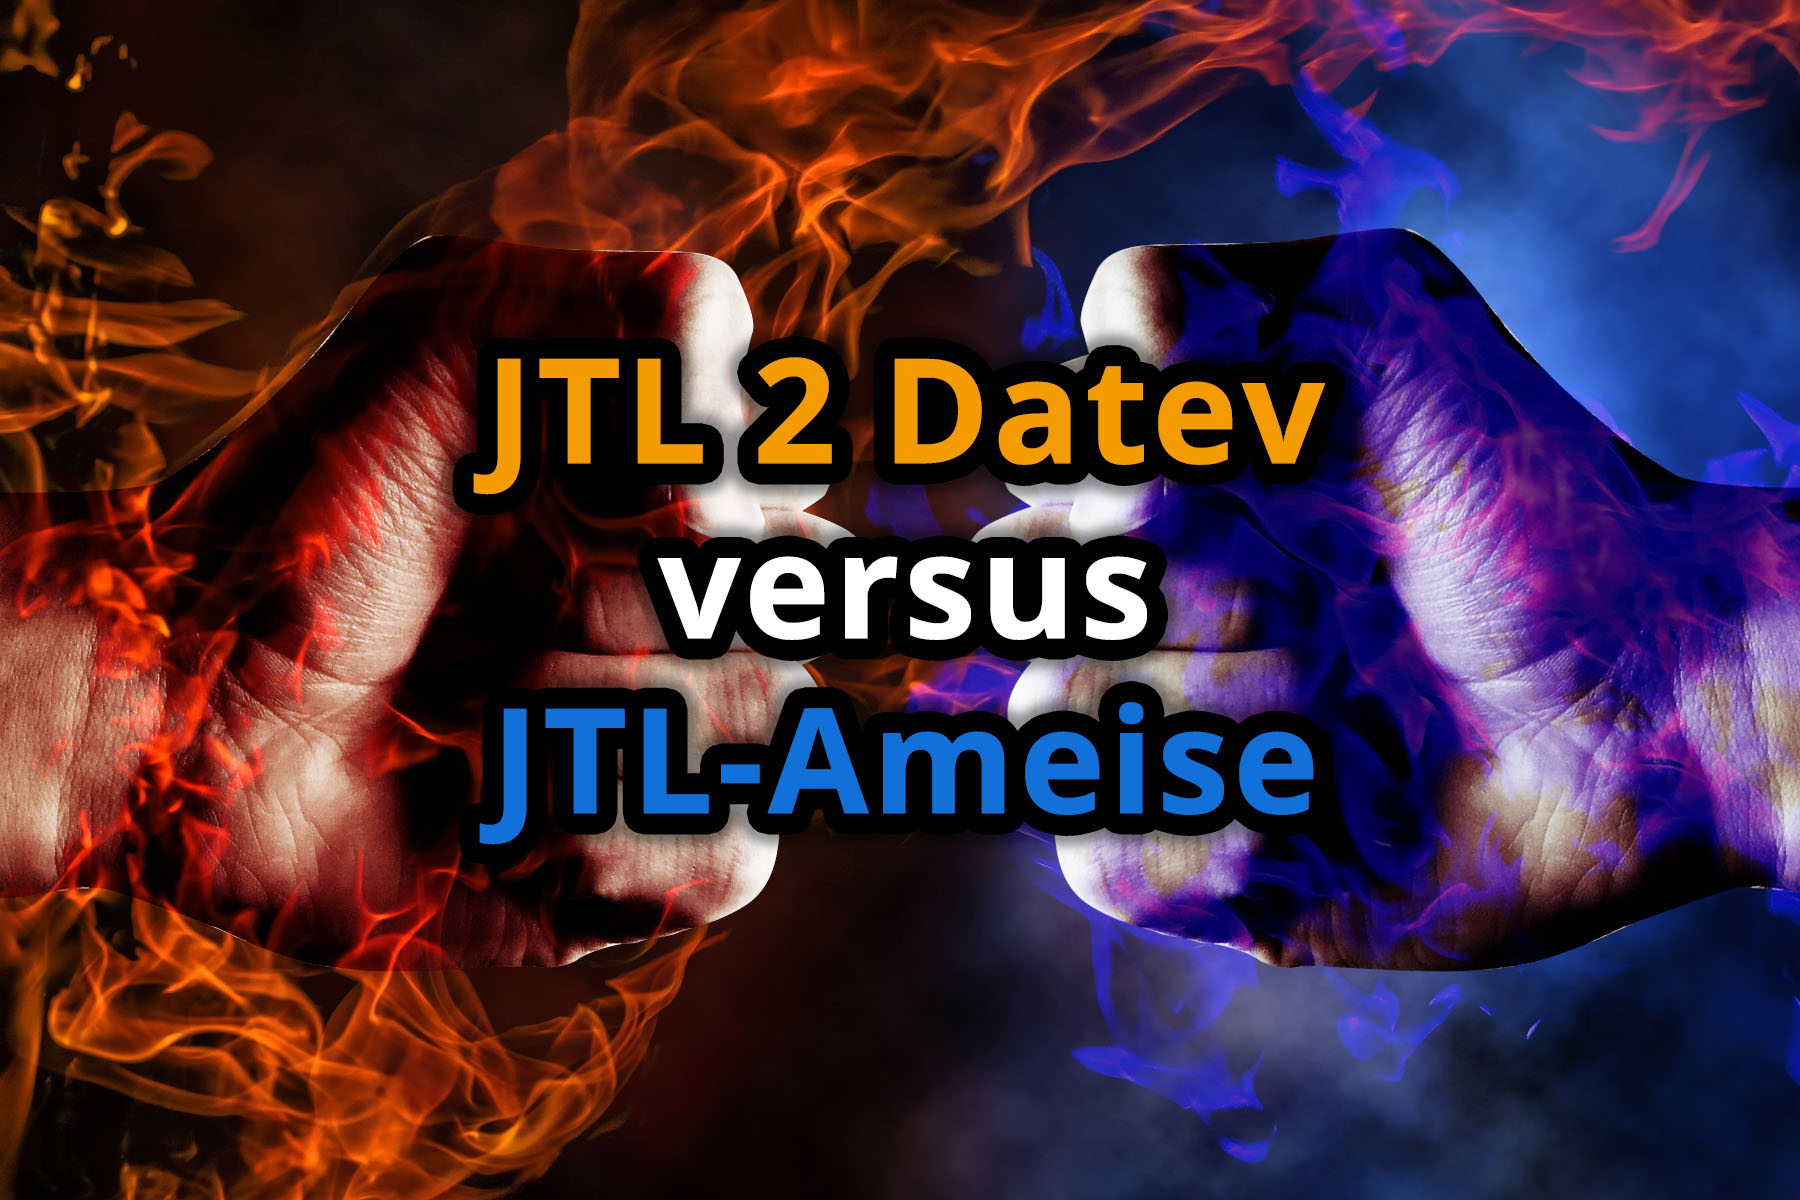 JTL 2 Datev versus JTL-Ameise